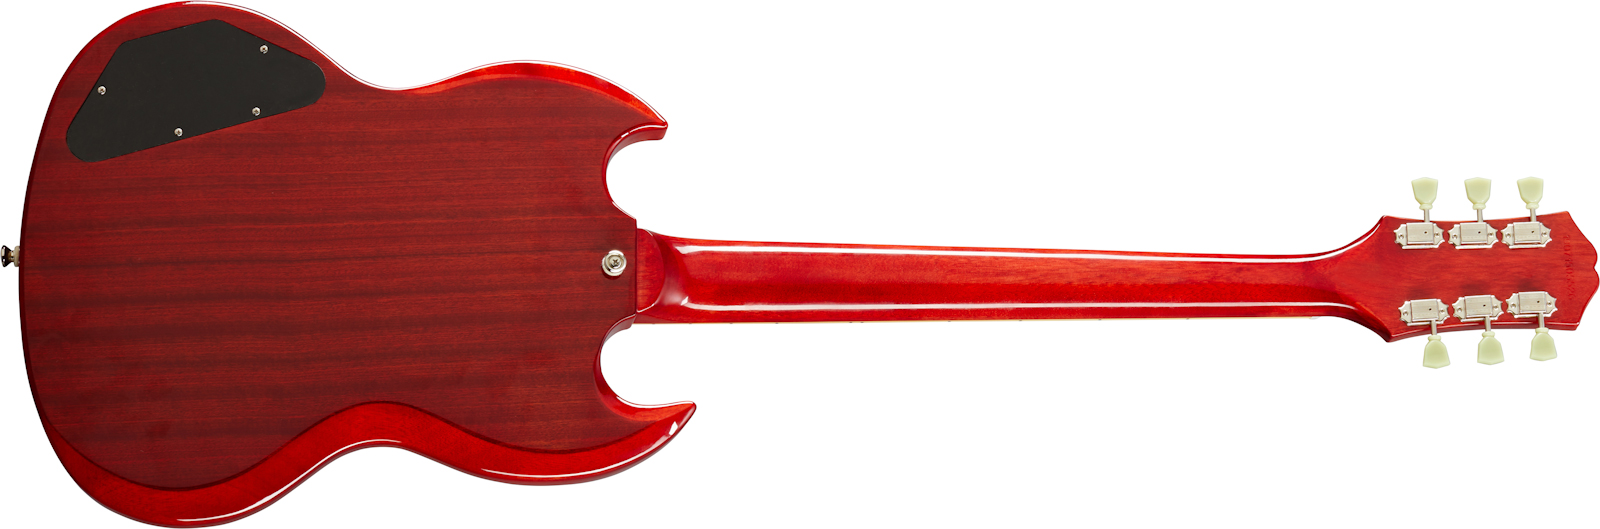 Epiphone Sg Standard 1961 Maestro Vibrola 2h Ht Lau - Vintage Cherry - Guitarra eléctrica de doble corte. - Variation 1